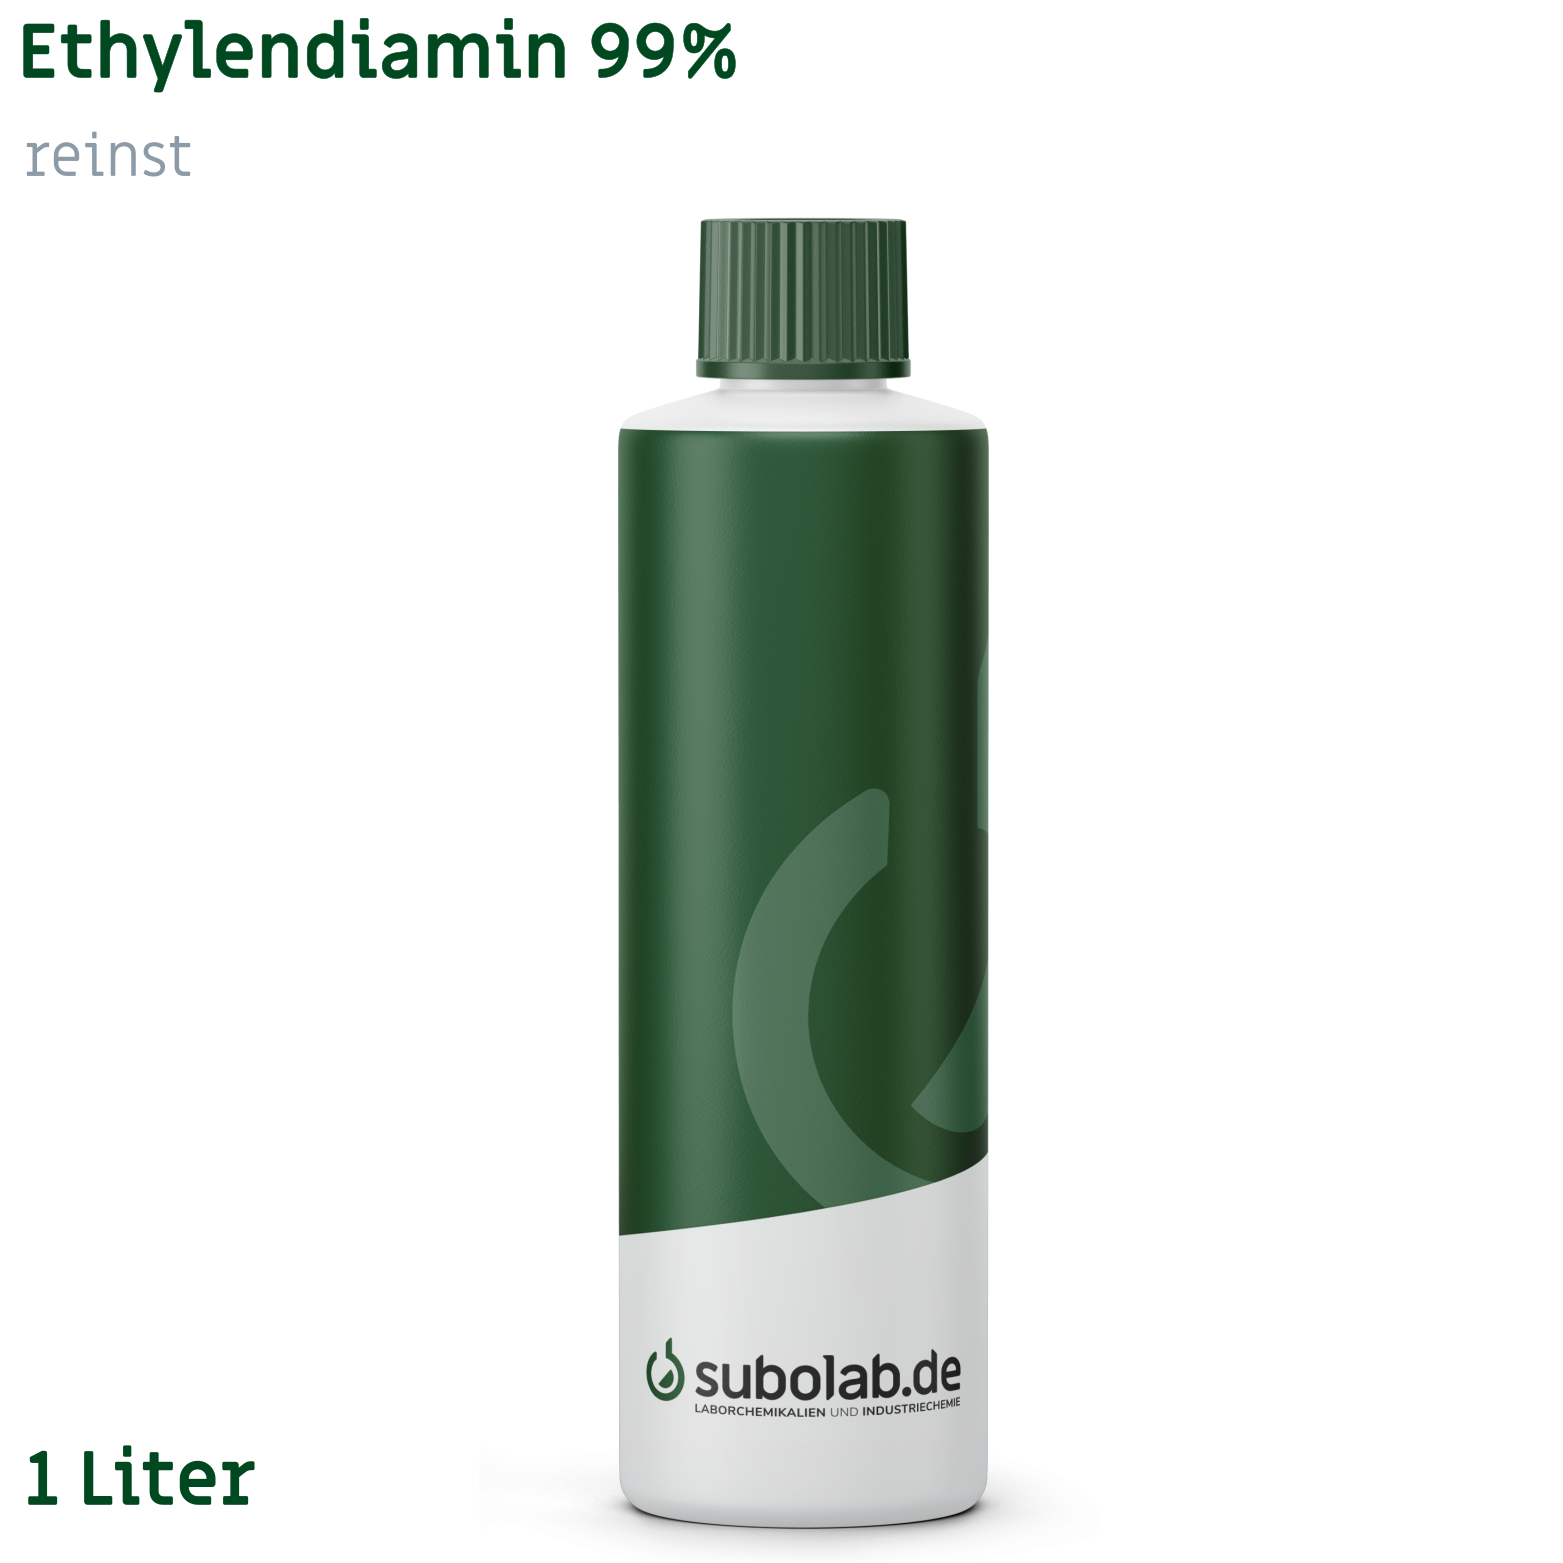 Bild von Ethylendiamin 99% reinst (1 Liter)